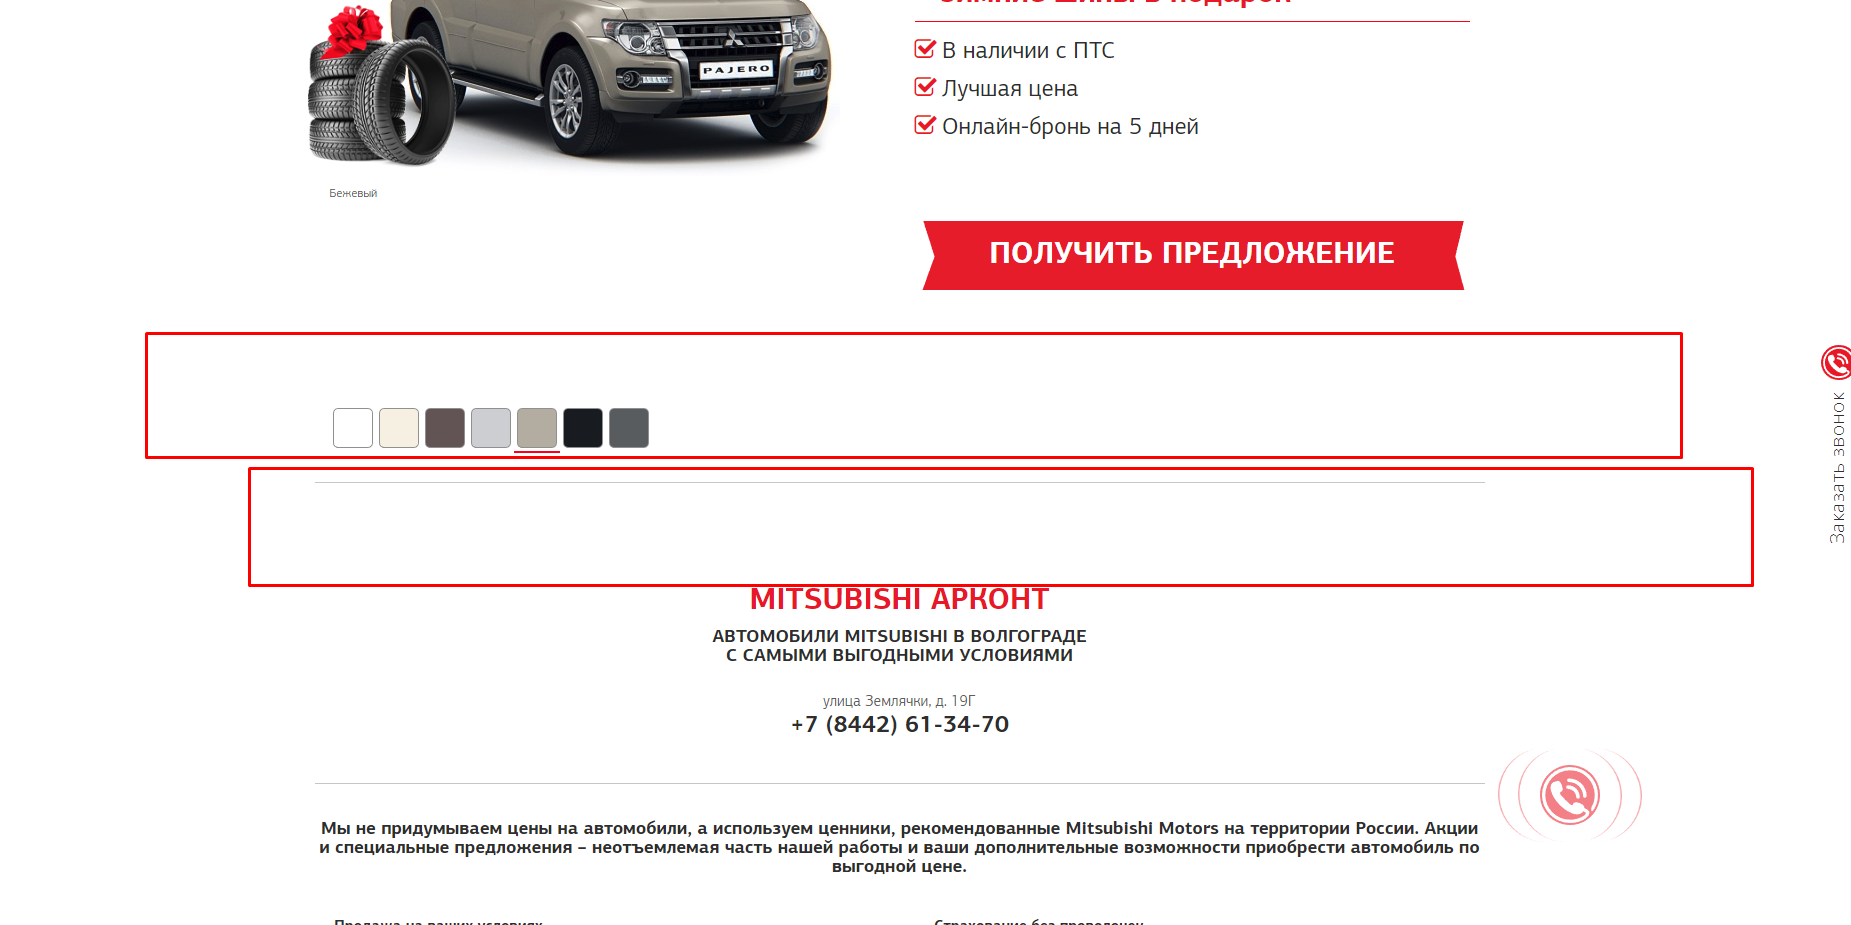 Запуск контекстной рекламы в Яндекс.Директе и Google Ads для автодилера Mitsubishi «Арконт» - рекомендации по сайту, кредит